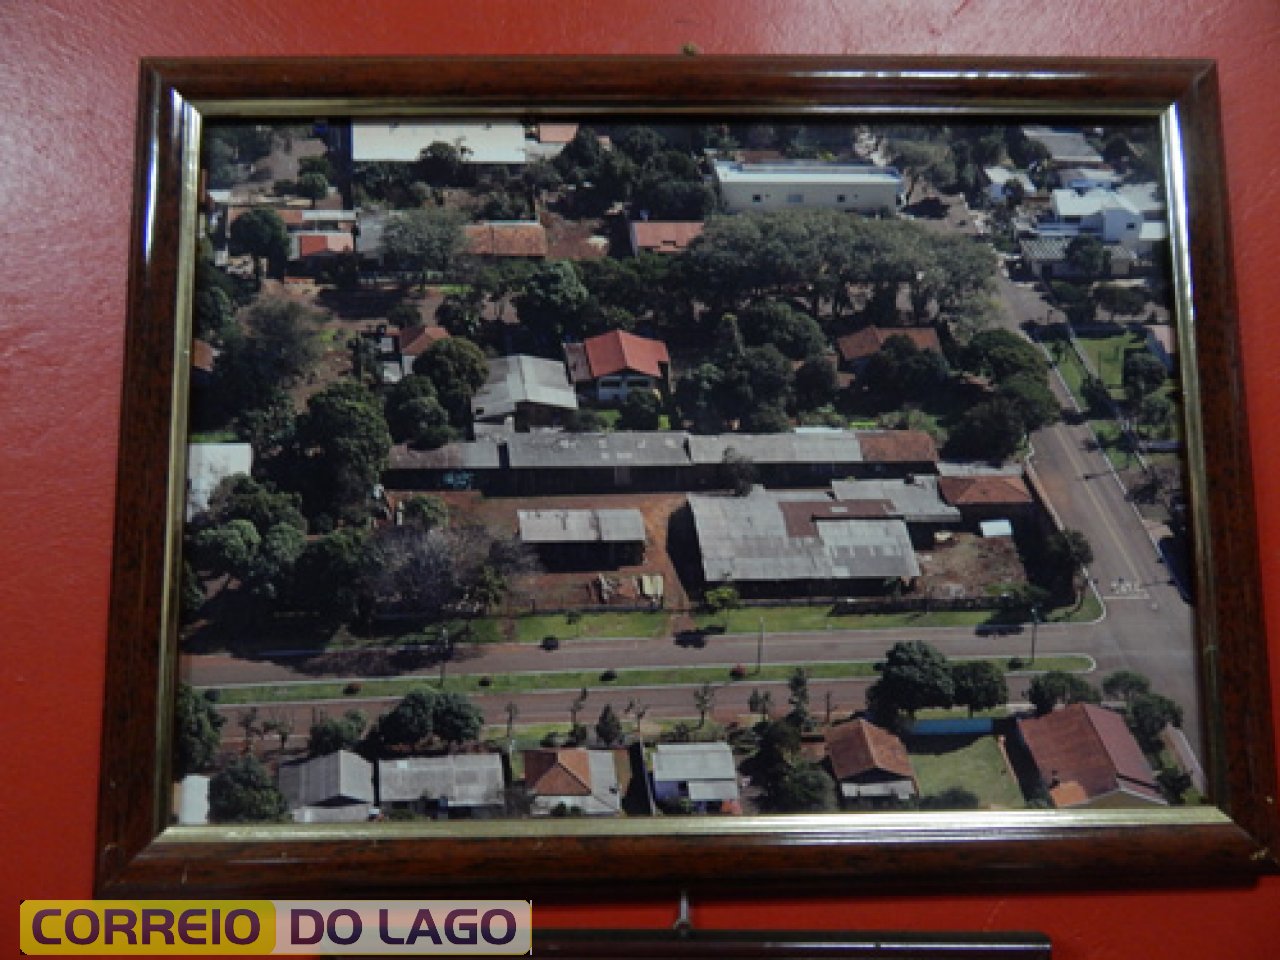 Visão panorâmica da Marcenaria Kozerski à direita da Av. Paraná. Observe a ocupação dos terrenos à esquerda da citada avenida. Década de 1990/2000.